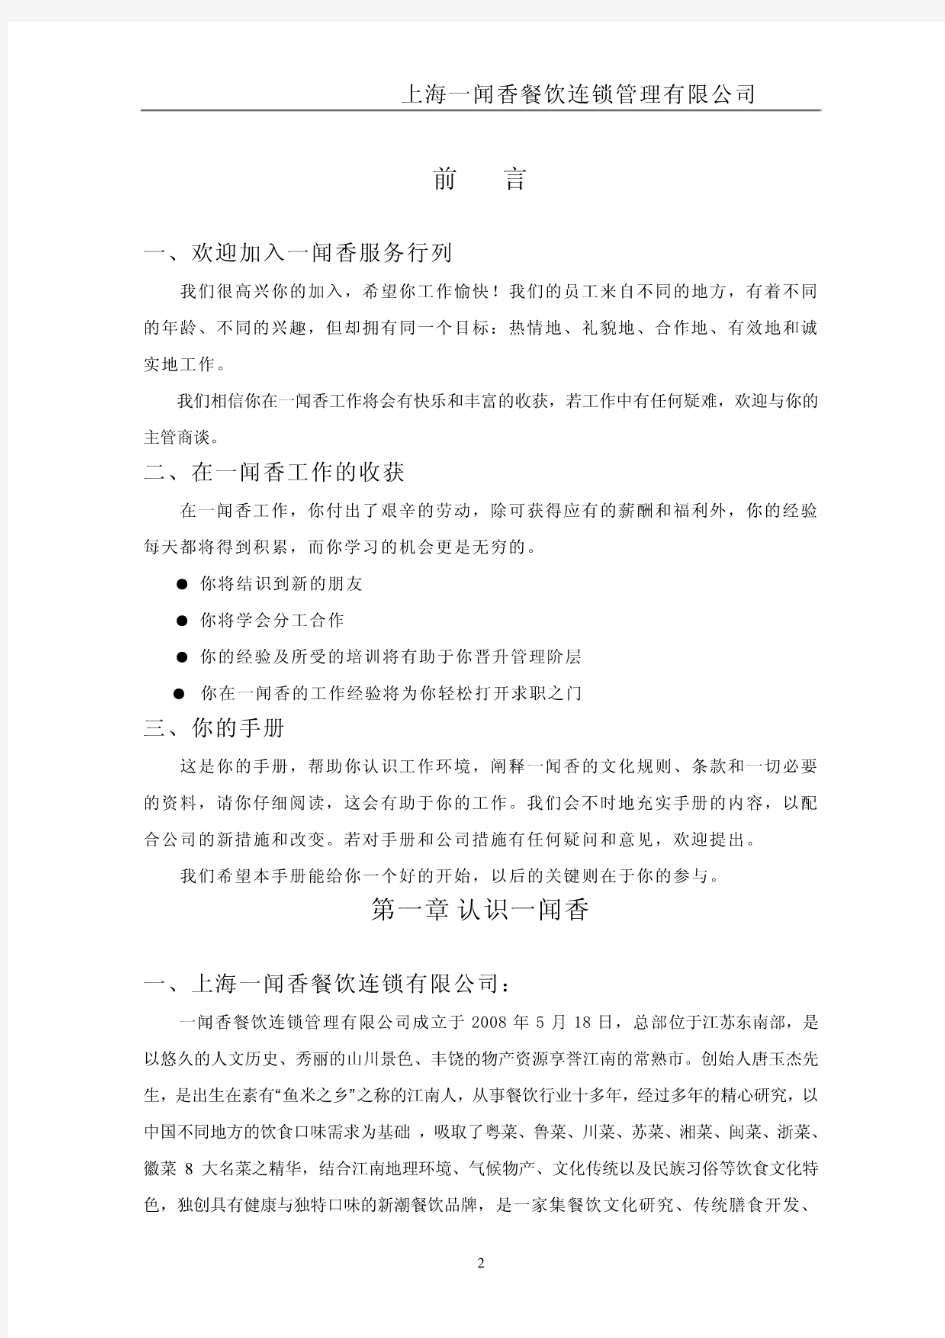 上海一闻香餐饮连锁管理有限公司员工手册